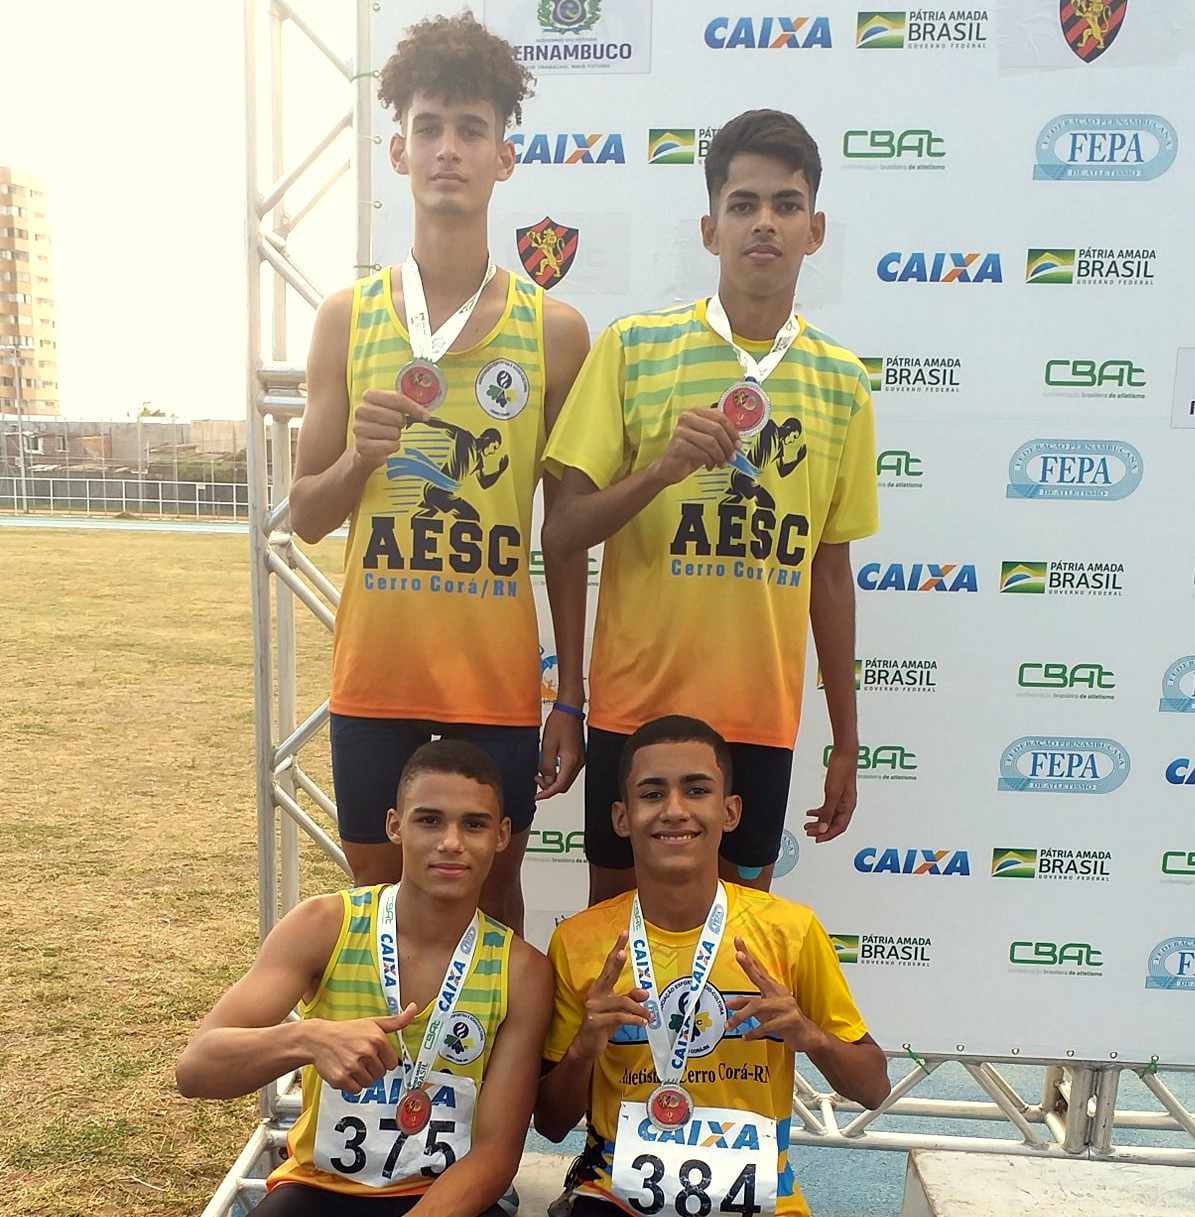 Bons resultados dos atletas de Cerro Corá no GP de Atletismo do Sport em Recife-PE